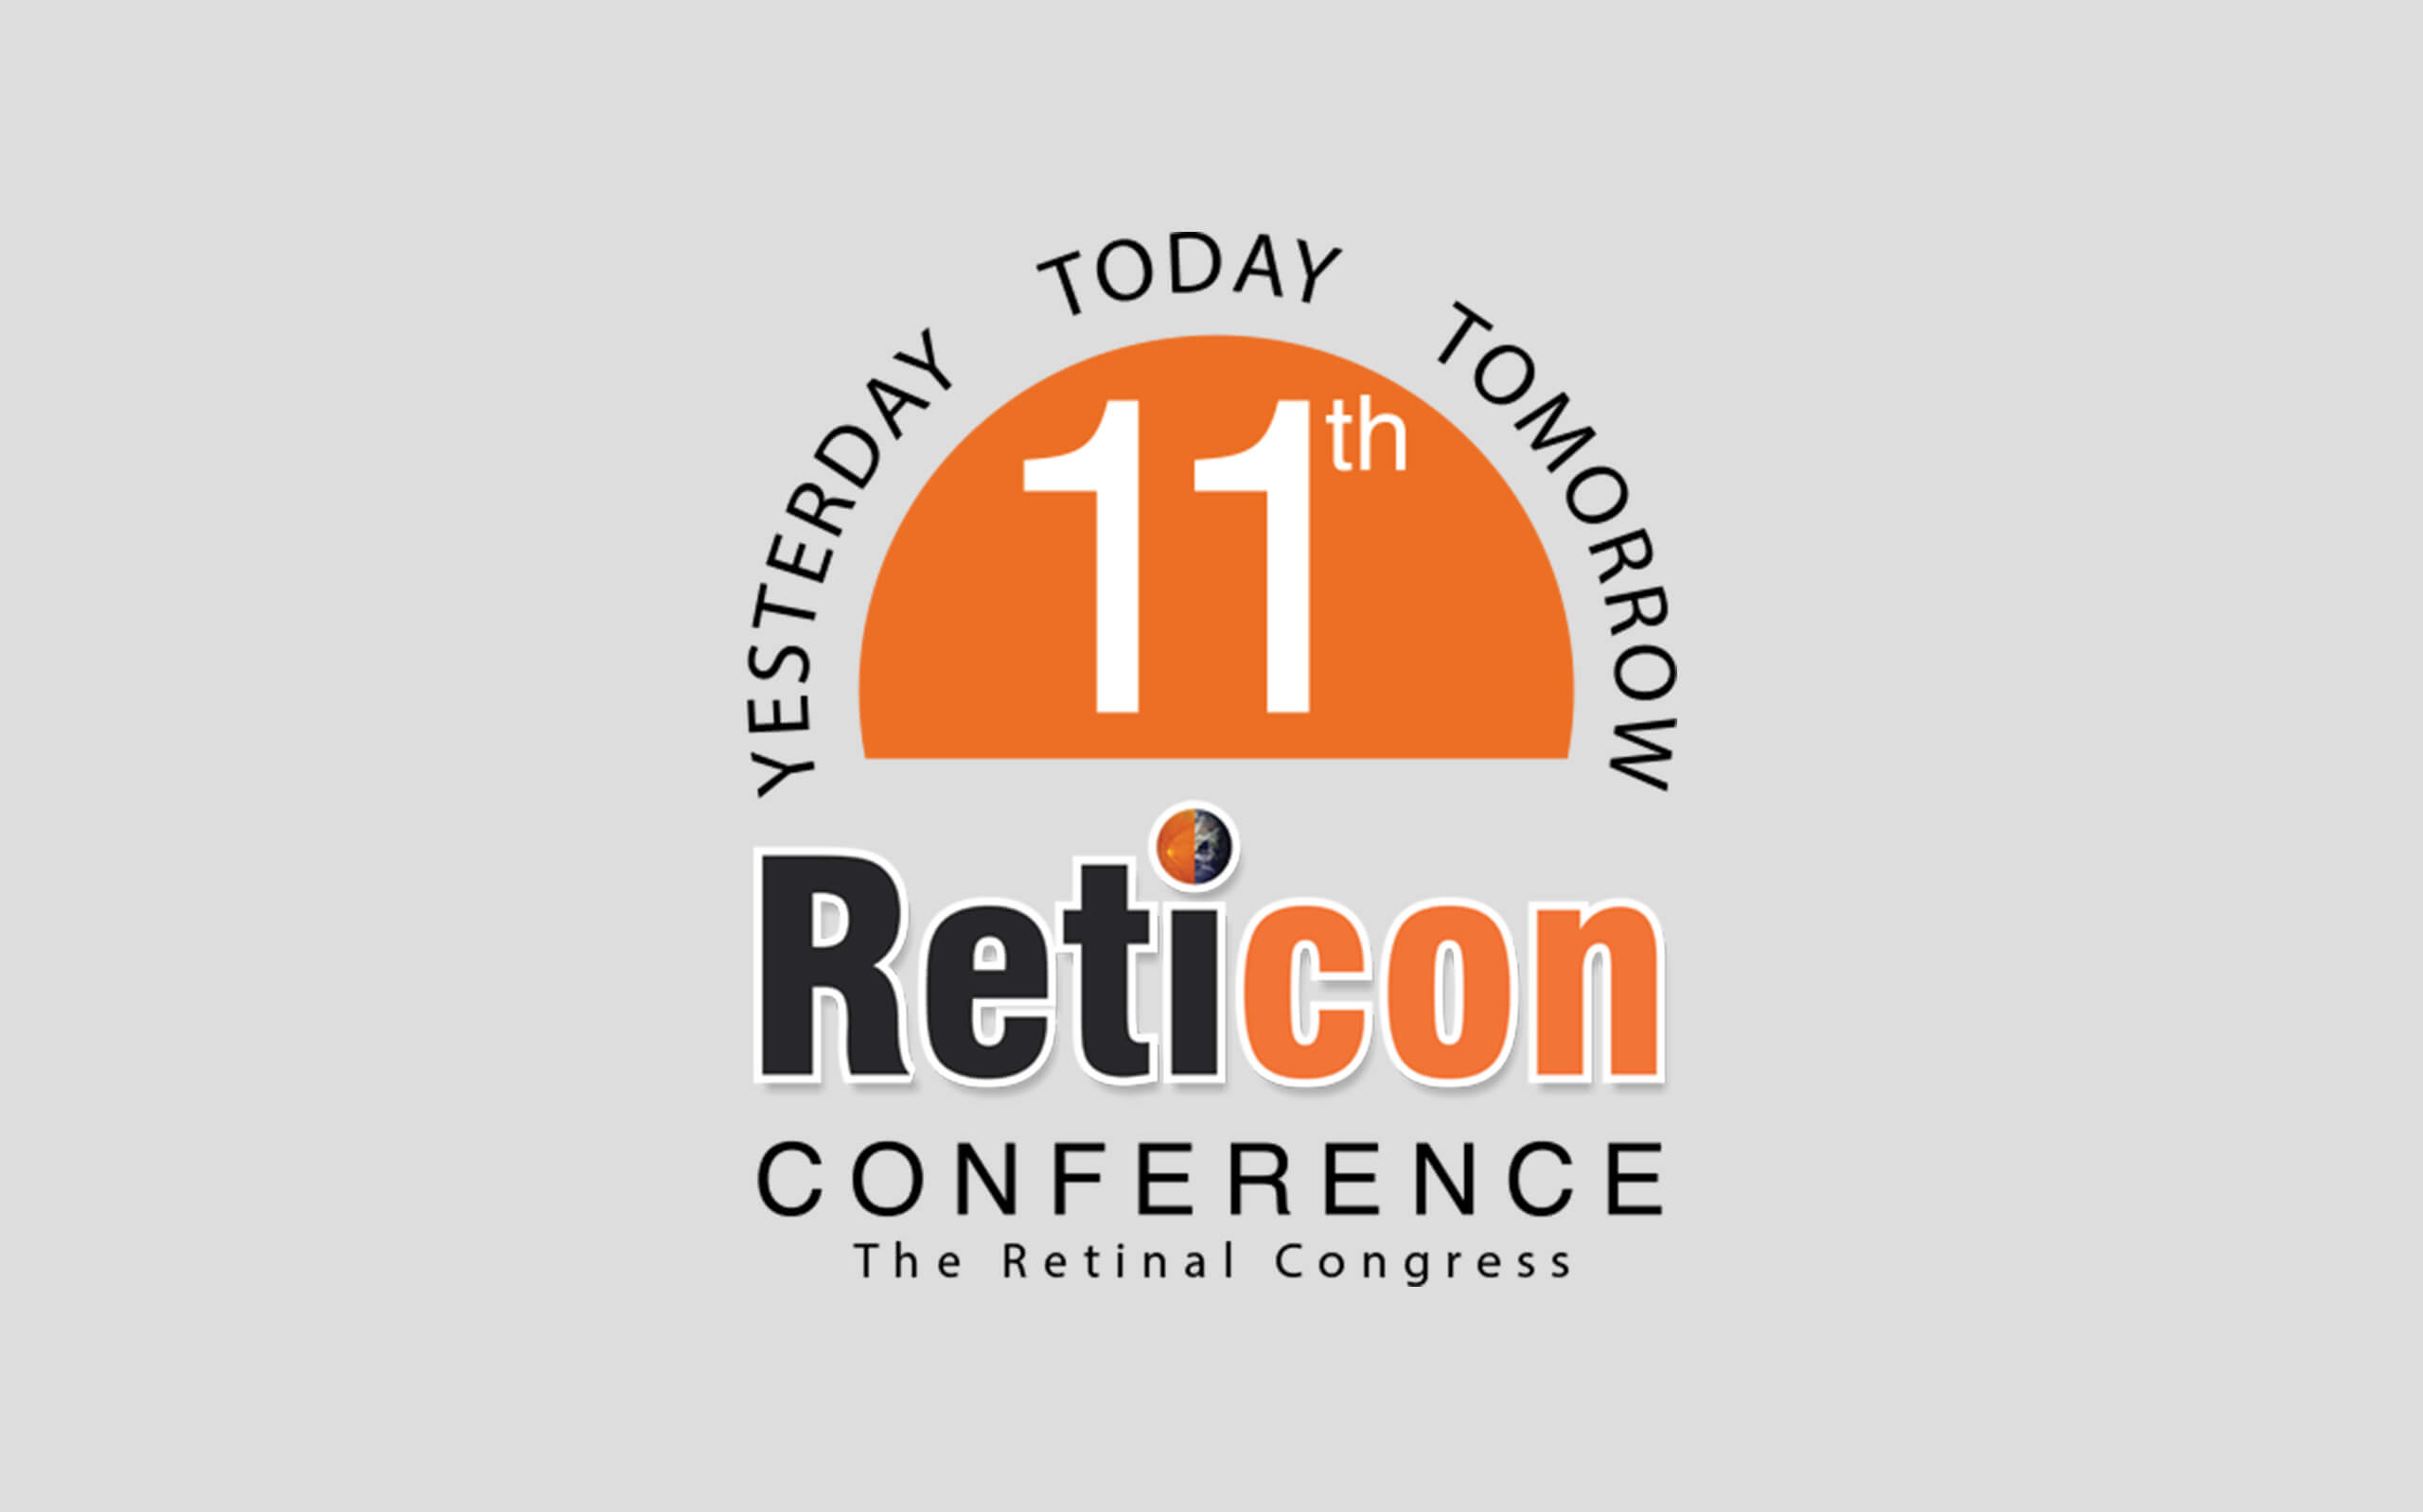 Reticon Conference